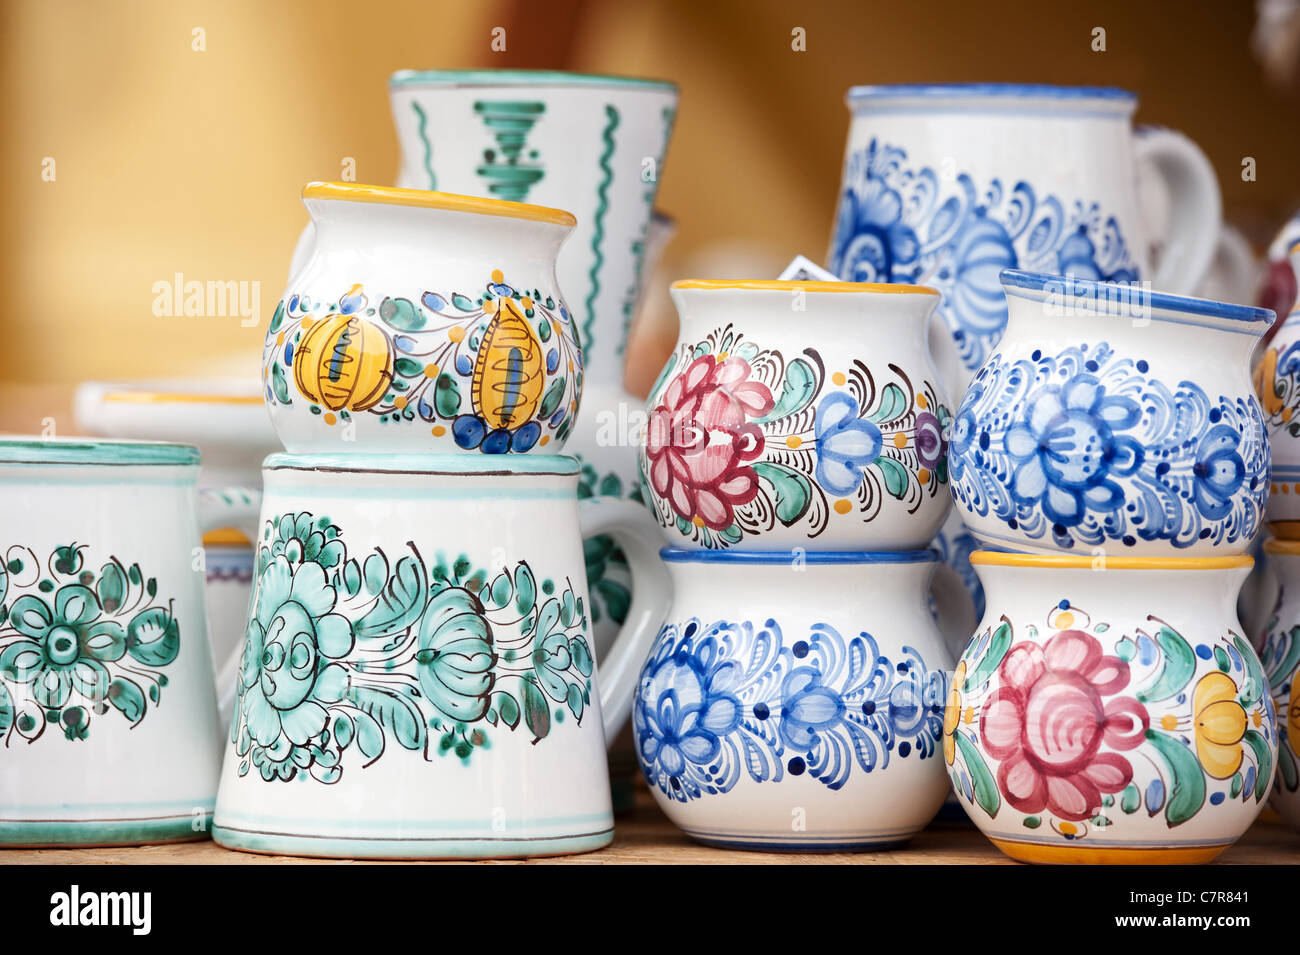 Popolari Modra ceramiche dalla Slovacchia Foto Stock